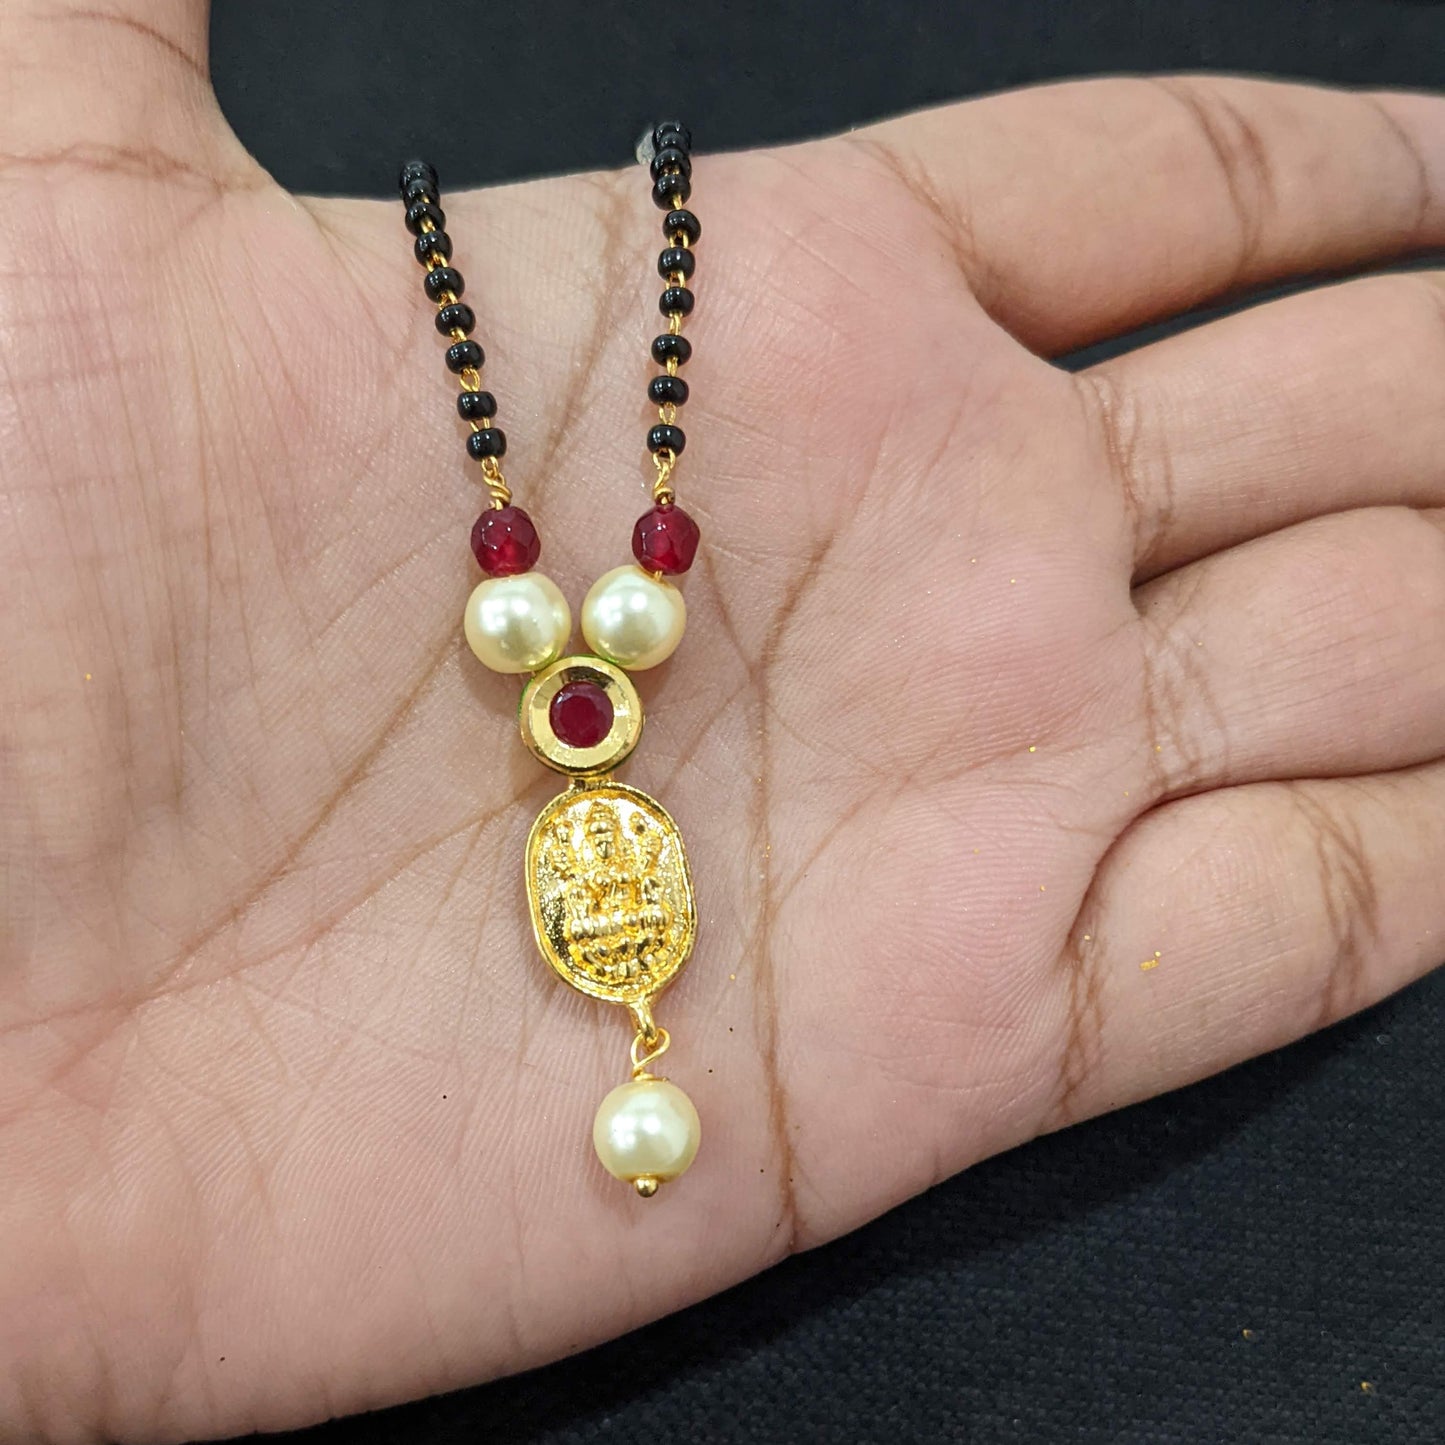 Mangalsutra - Lakshmi ji Pendant Necklace - Single strand